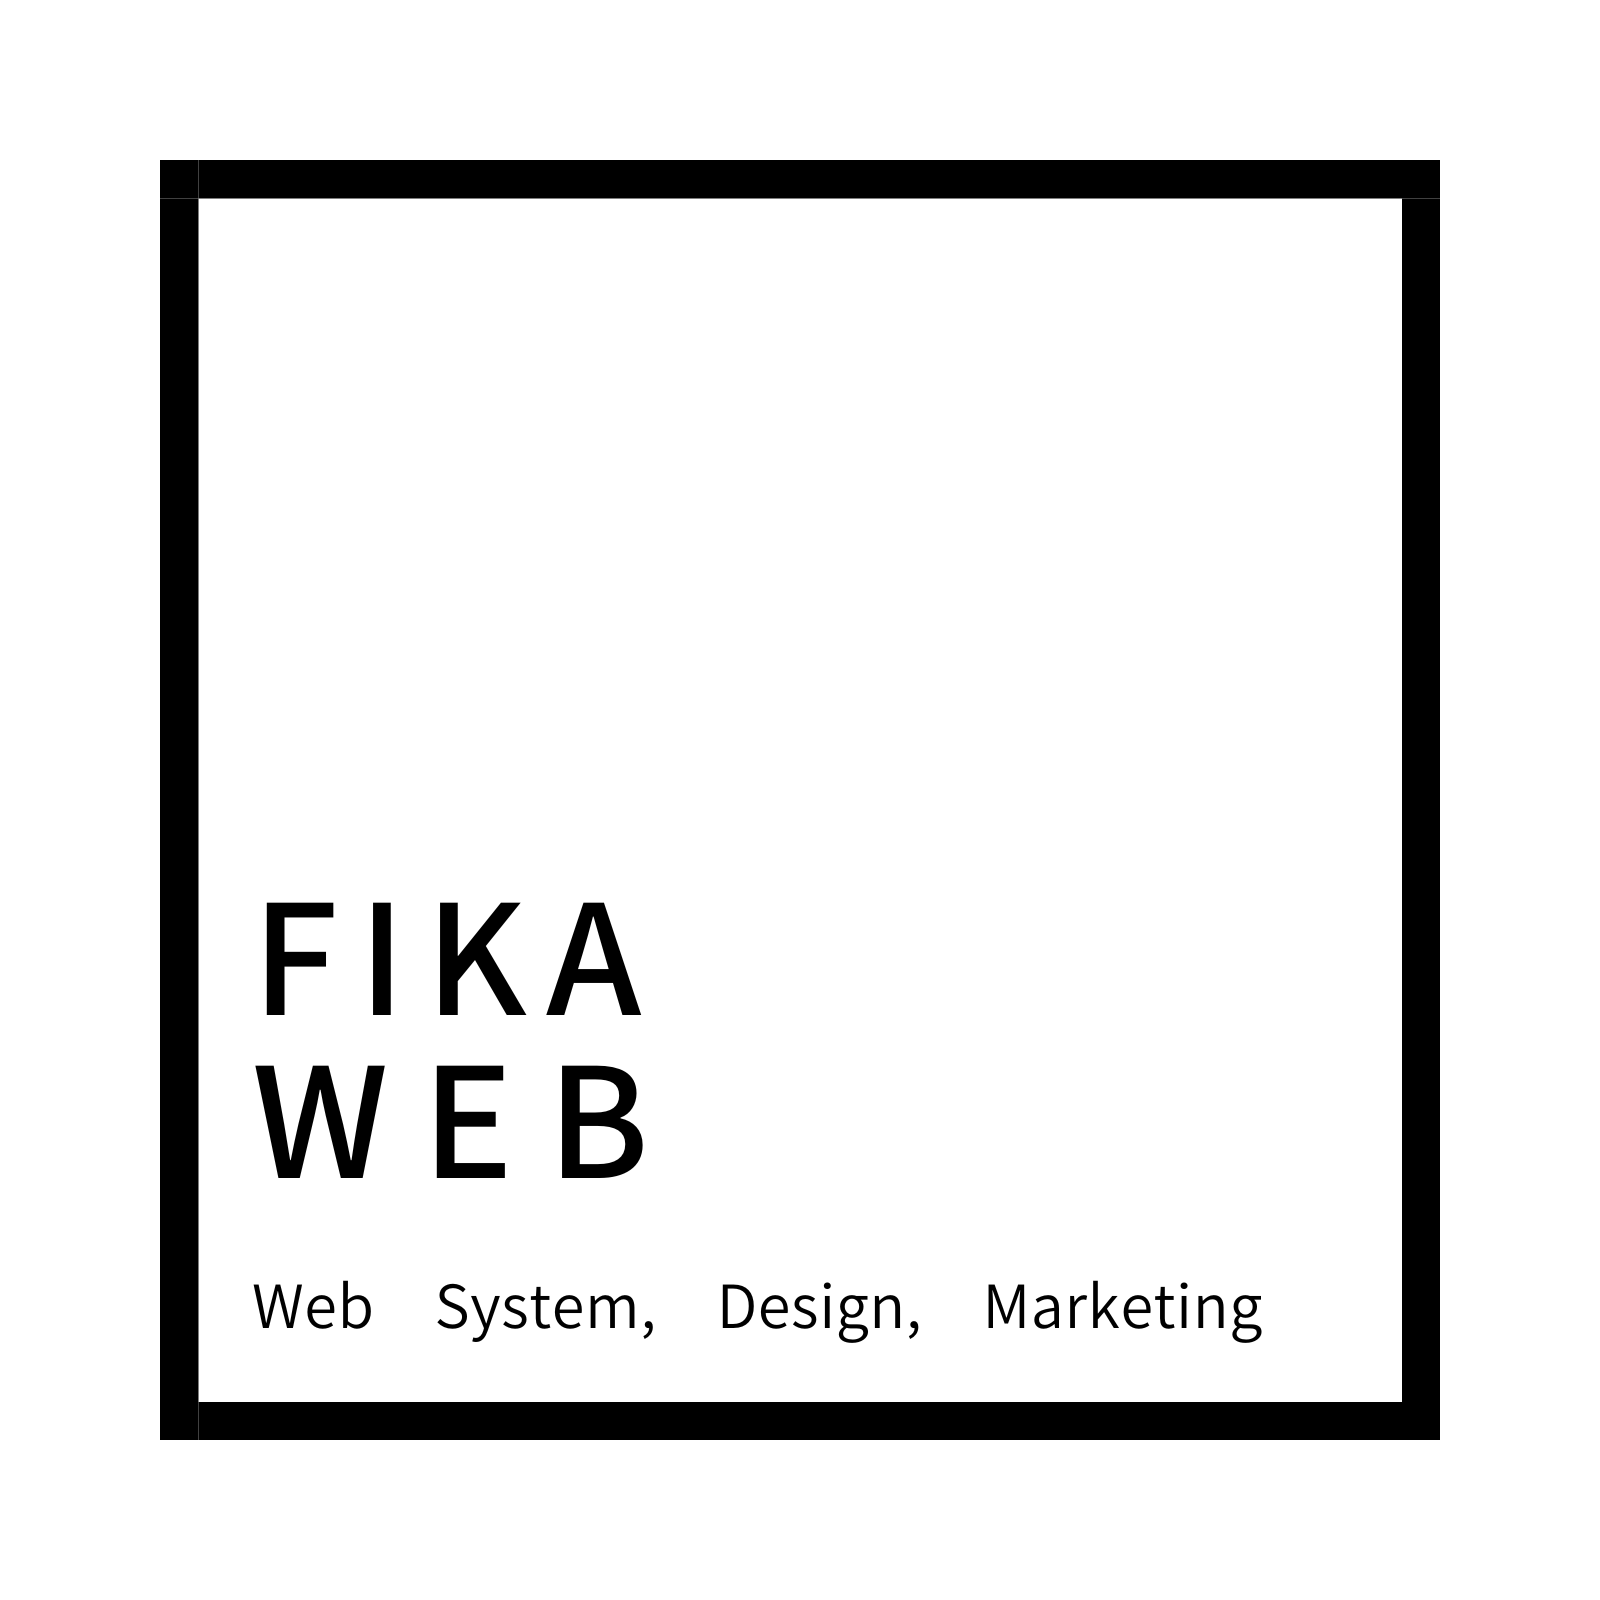 FIKA WEB